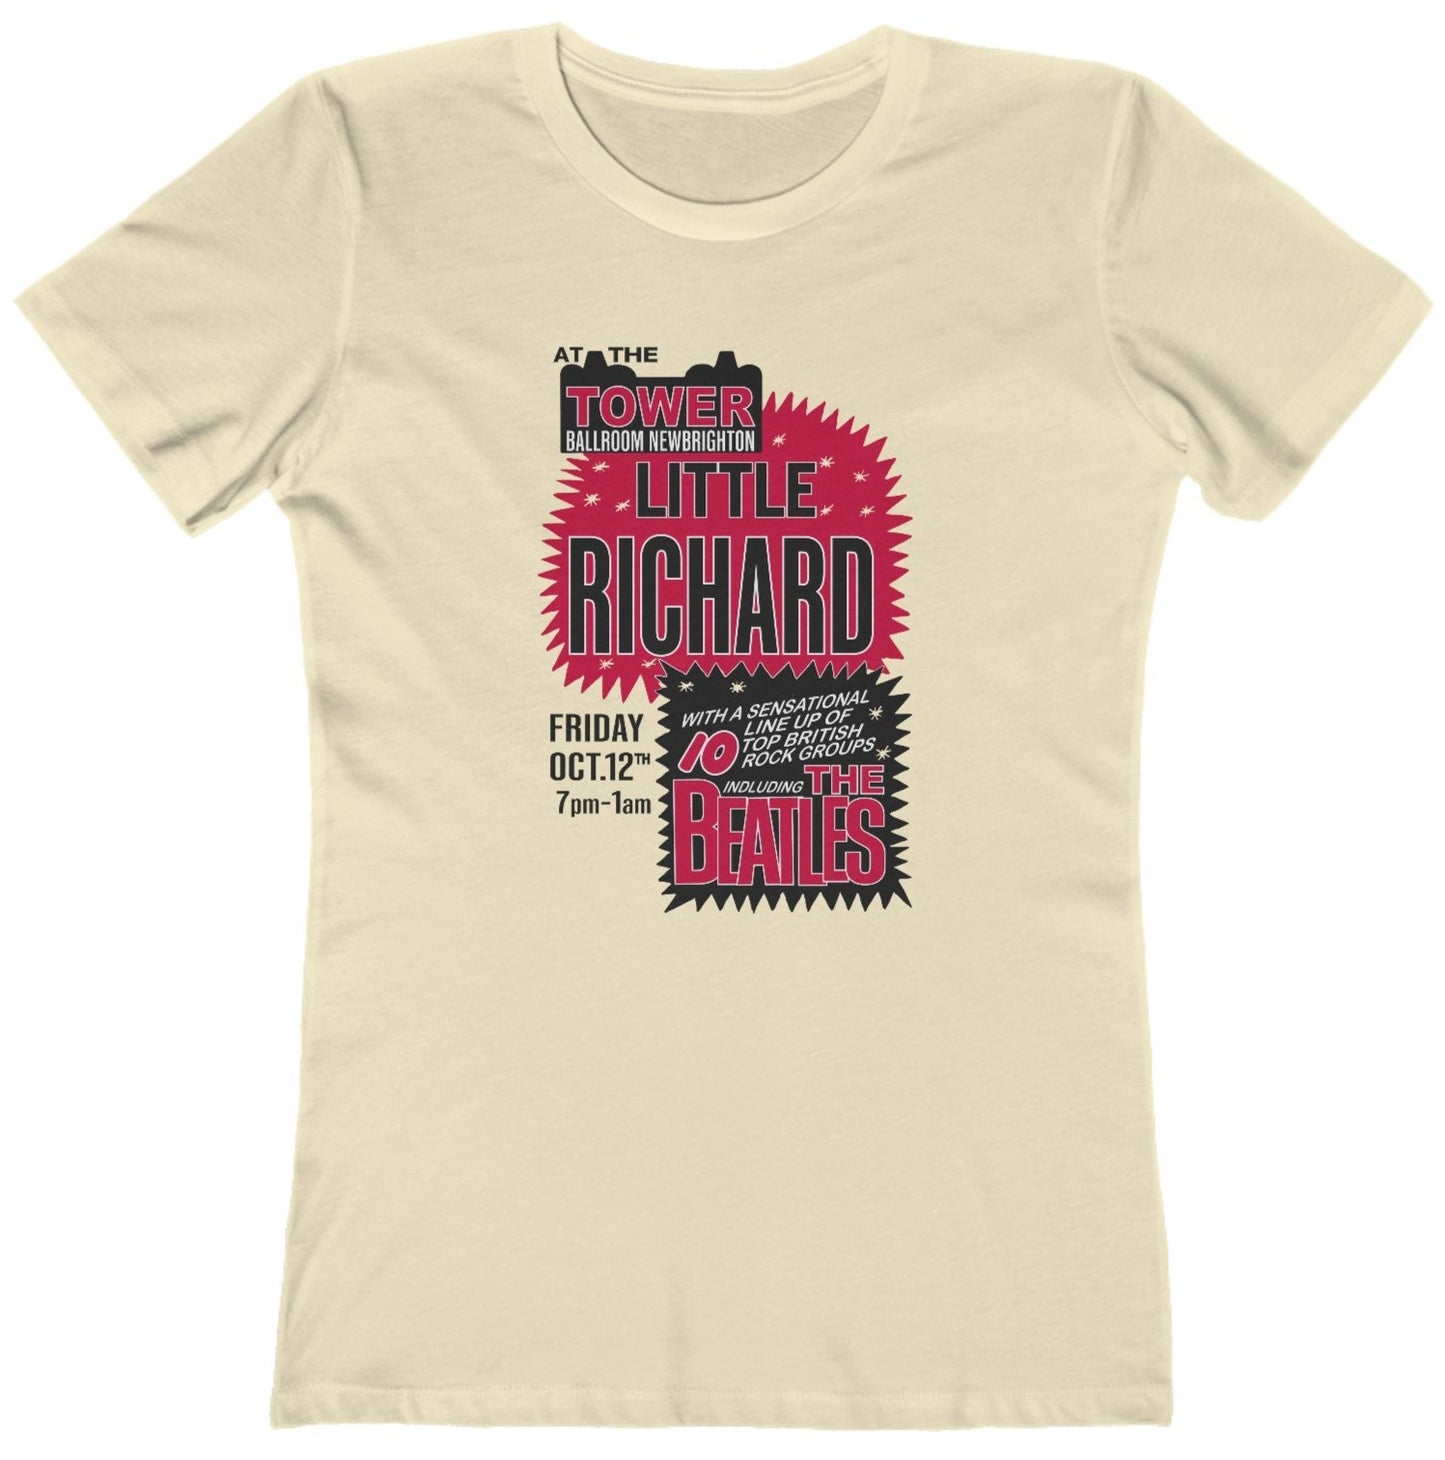 Little Richard Beatles t shirt